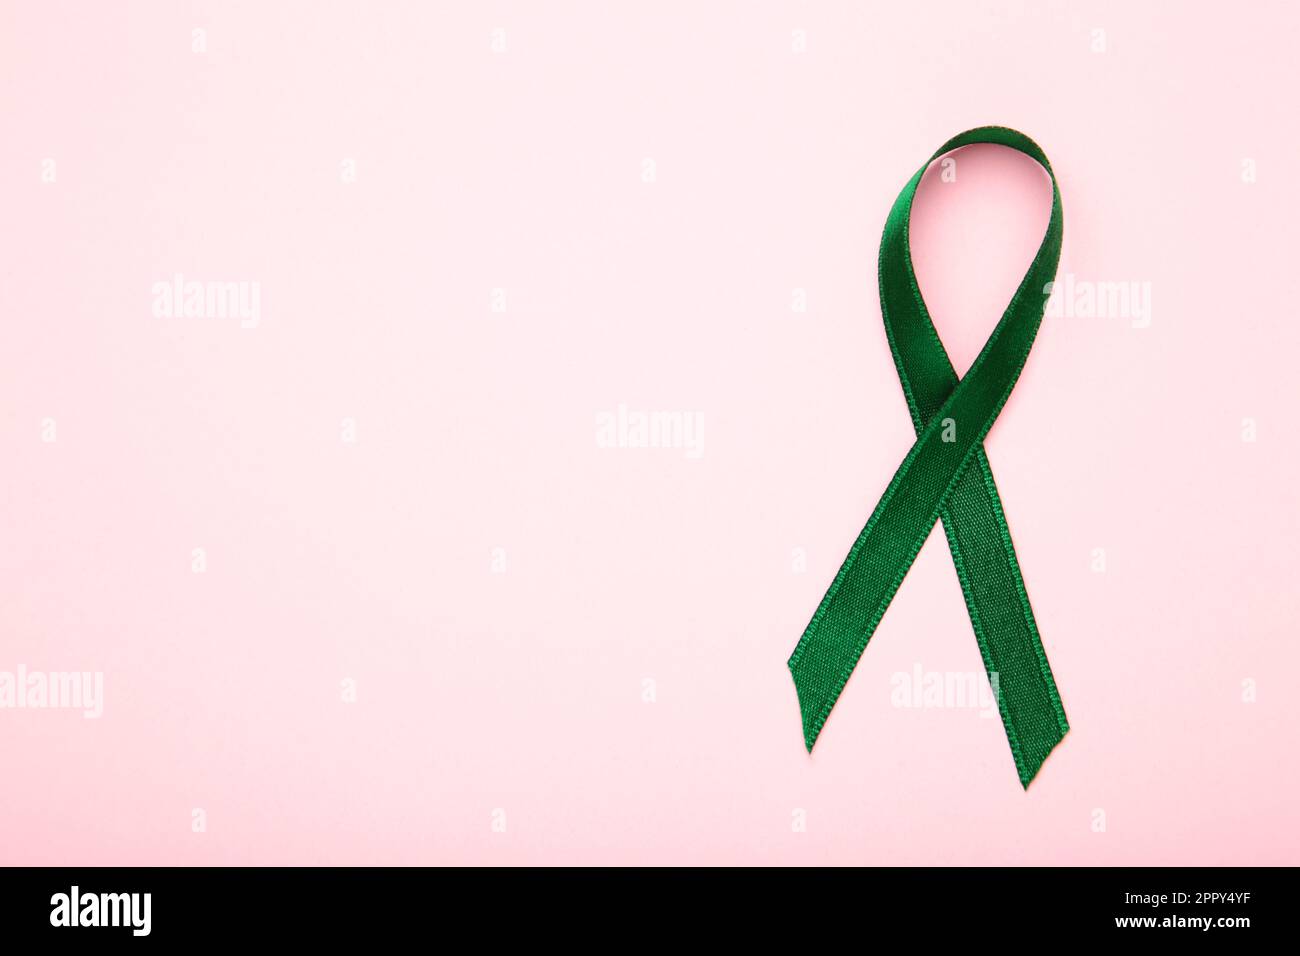 Gesundheits- und Medizinkonzept. Grünes Organtransplantationsband auf pinkfarbenem Hintergrund. Stockfoto